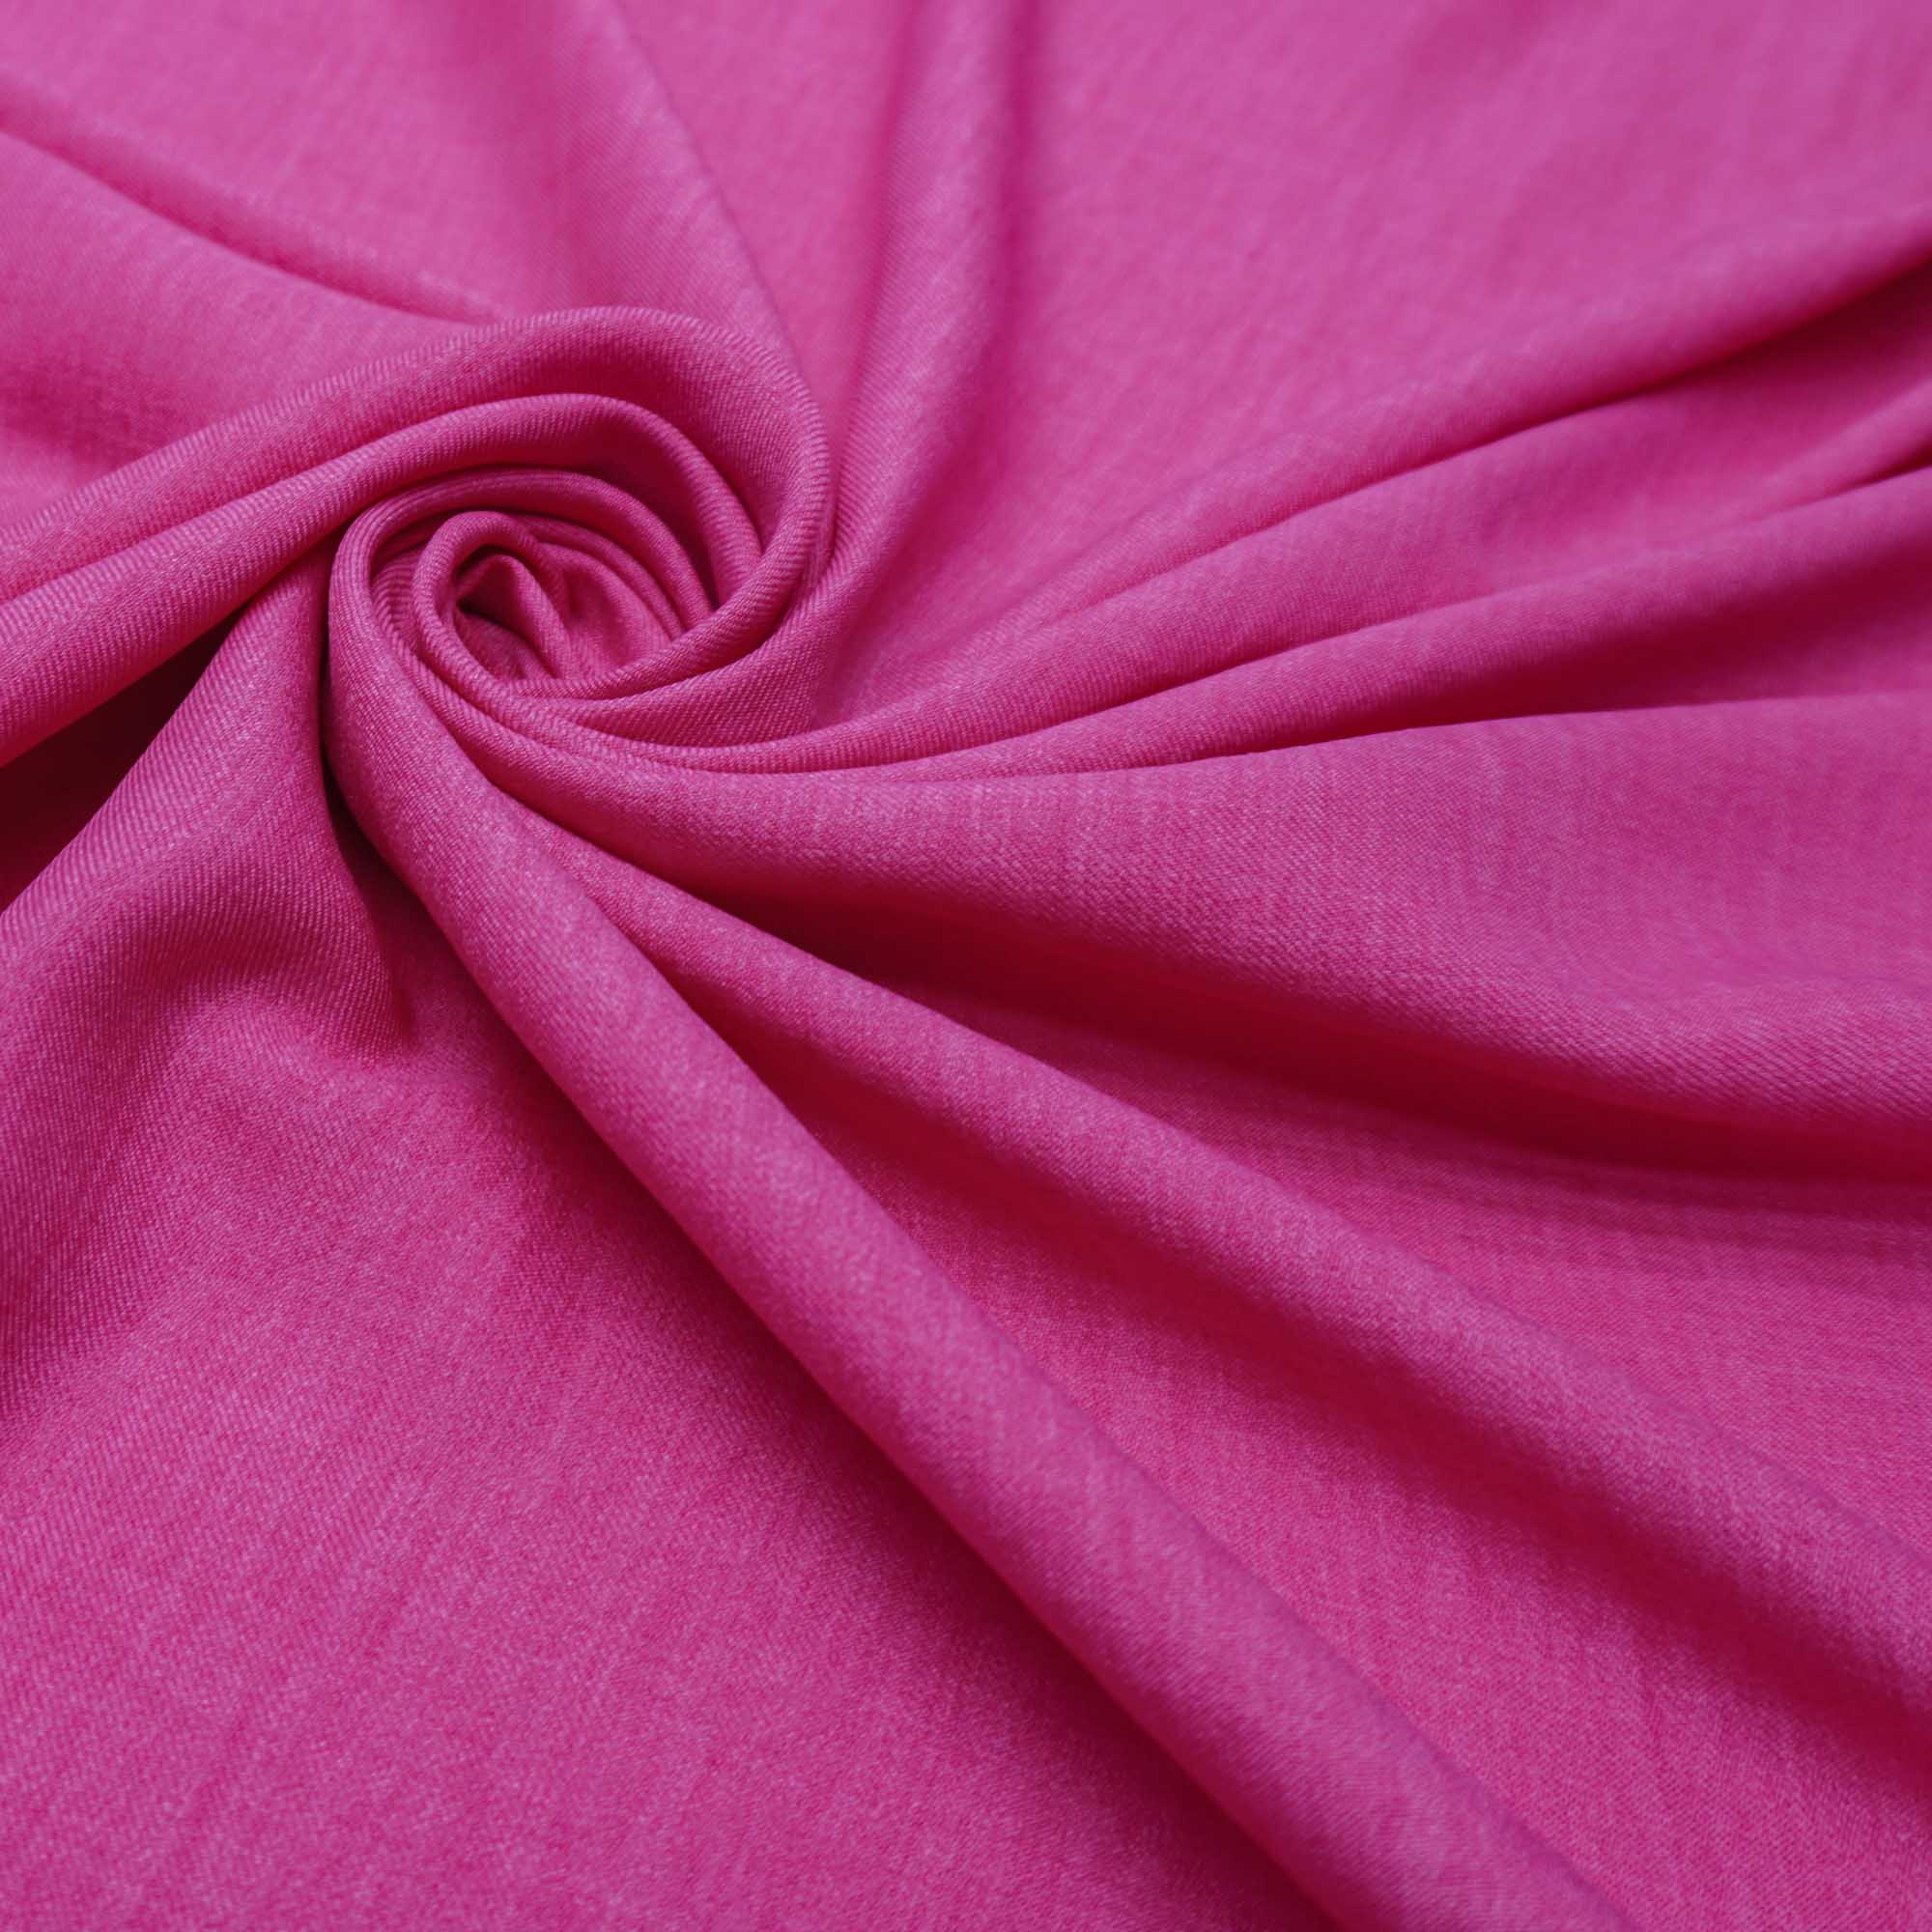 Tecido alfaiataria com textura de linho rosa chiclete